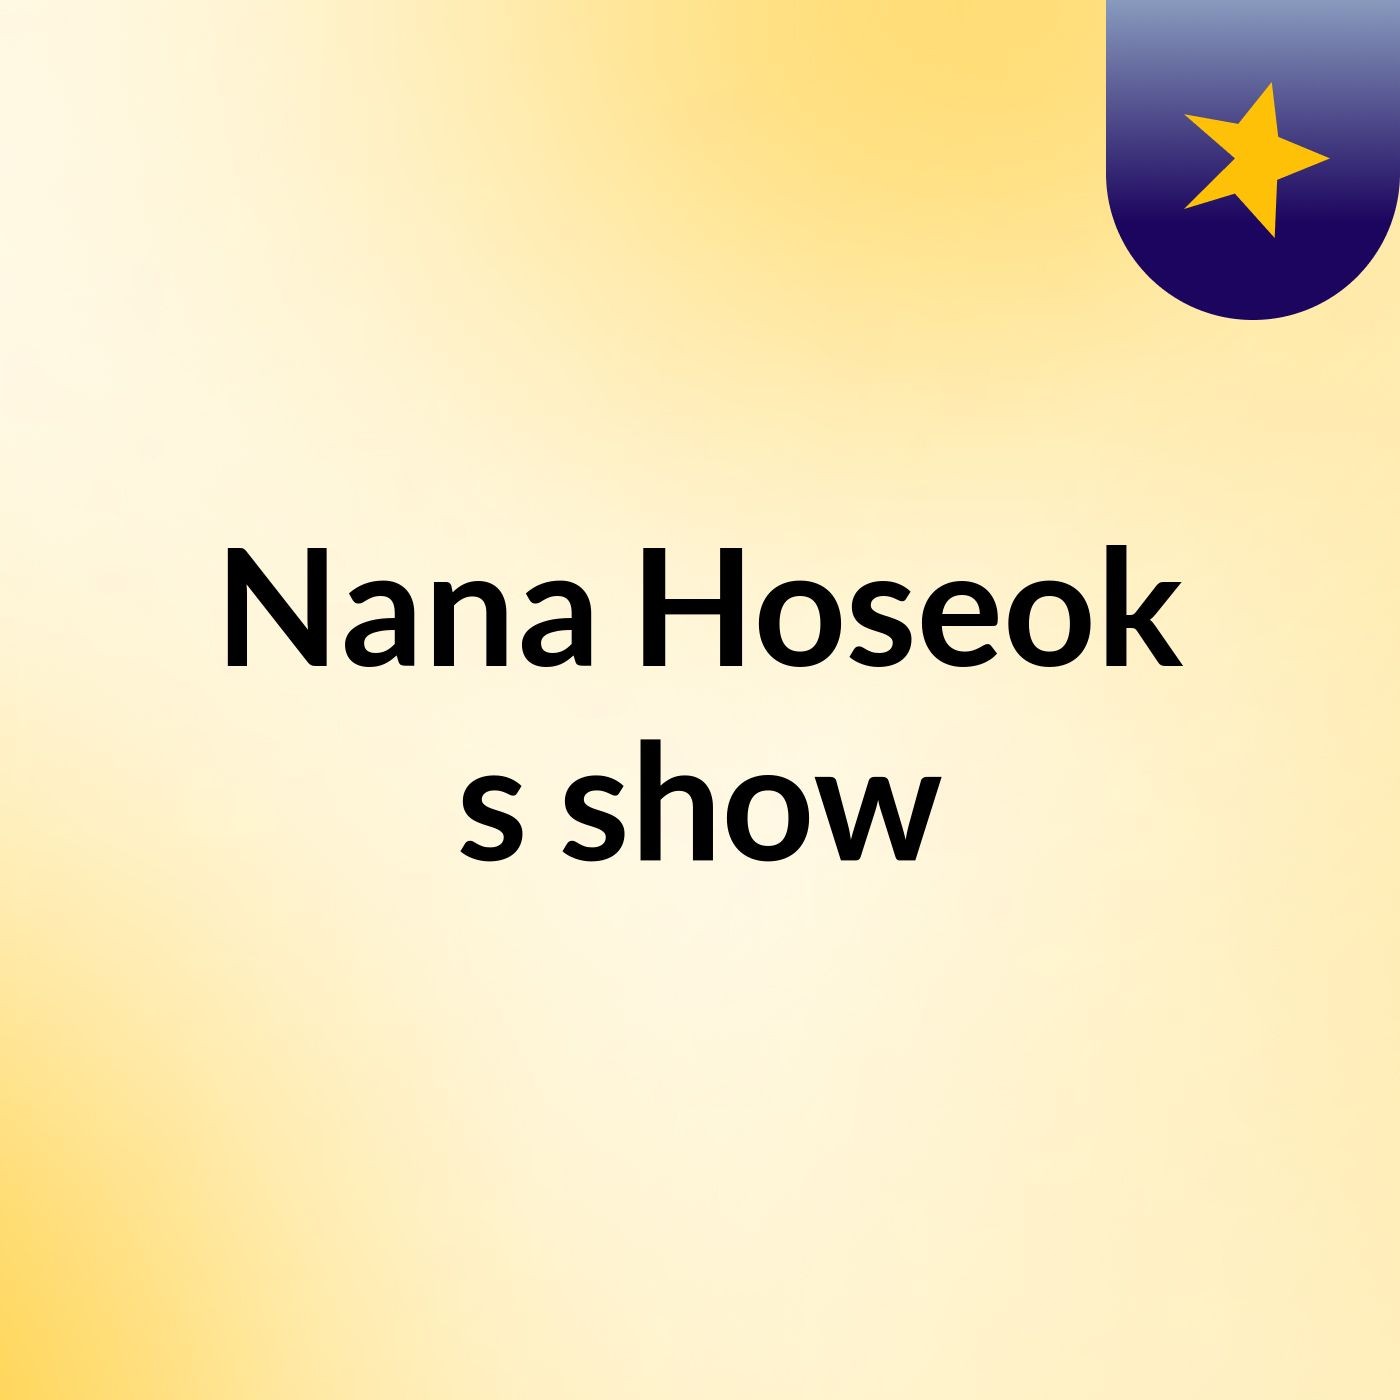 Nana Hoseok's show